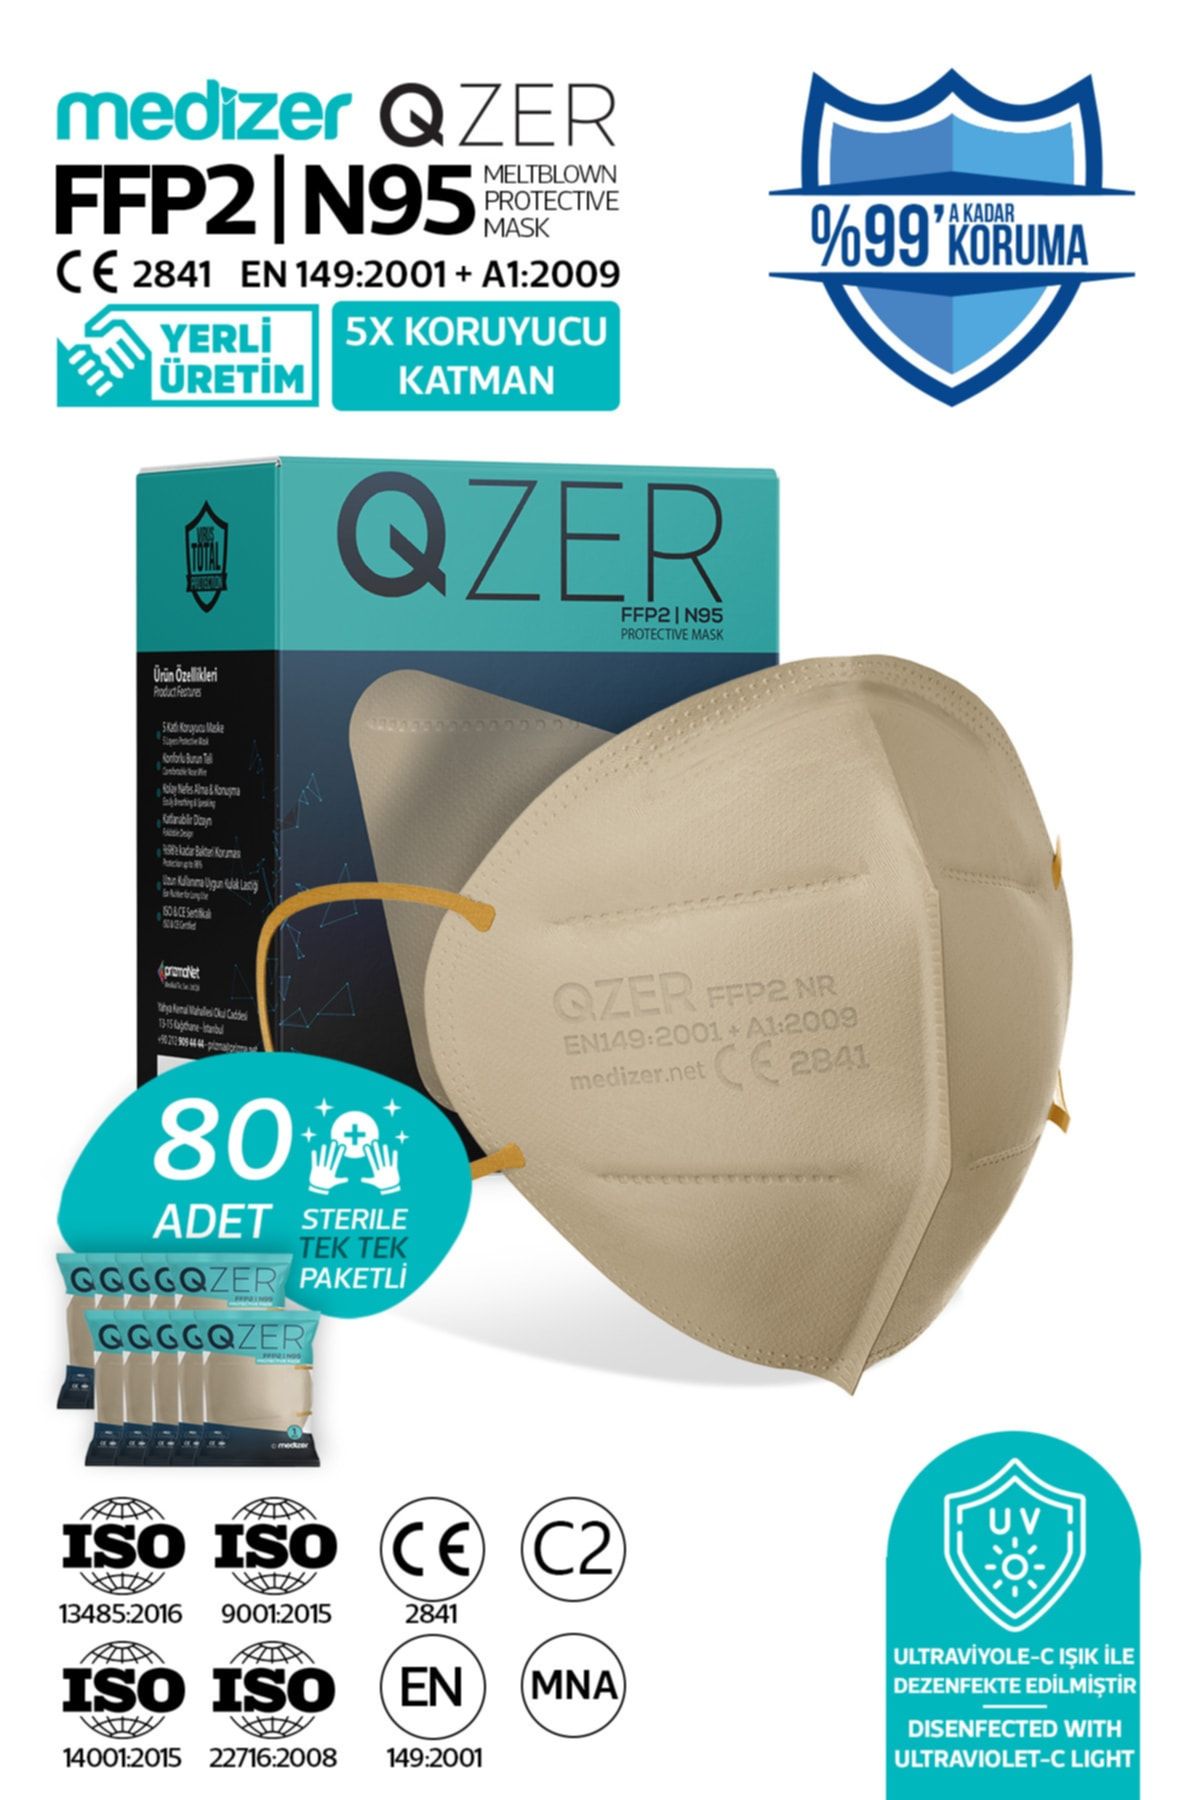 Medizer Qzer 80 Adet Krem Renk 5 Katmanlı N95 Maske